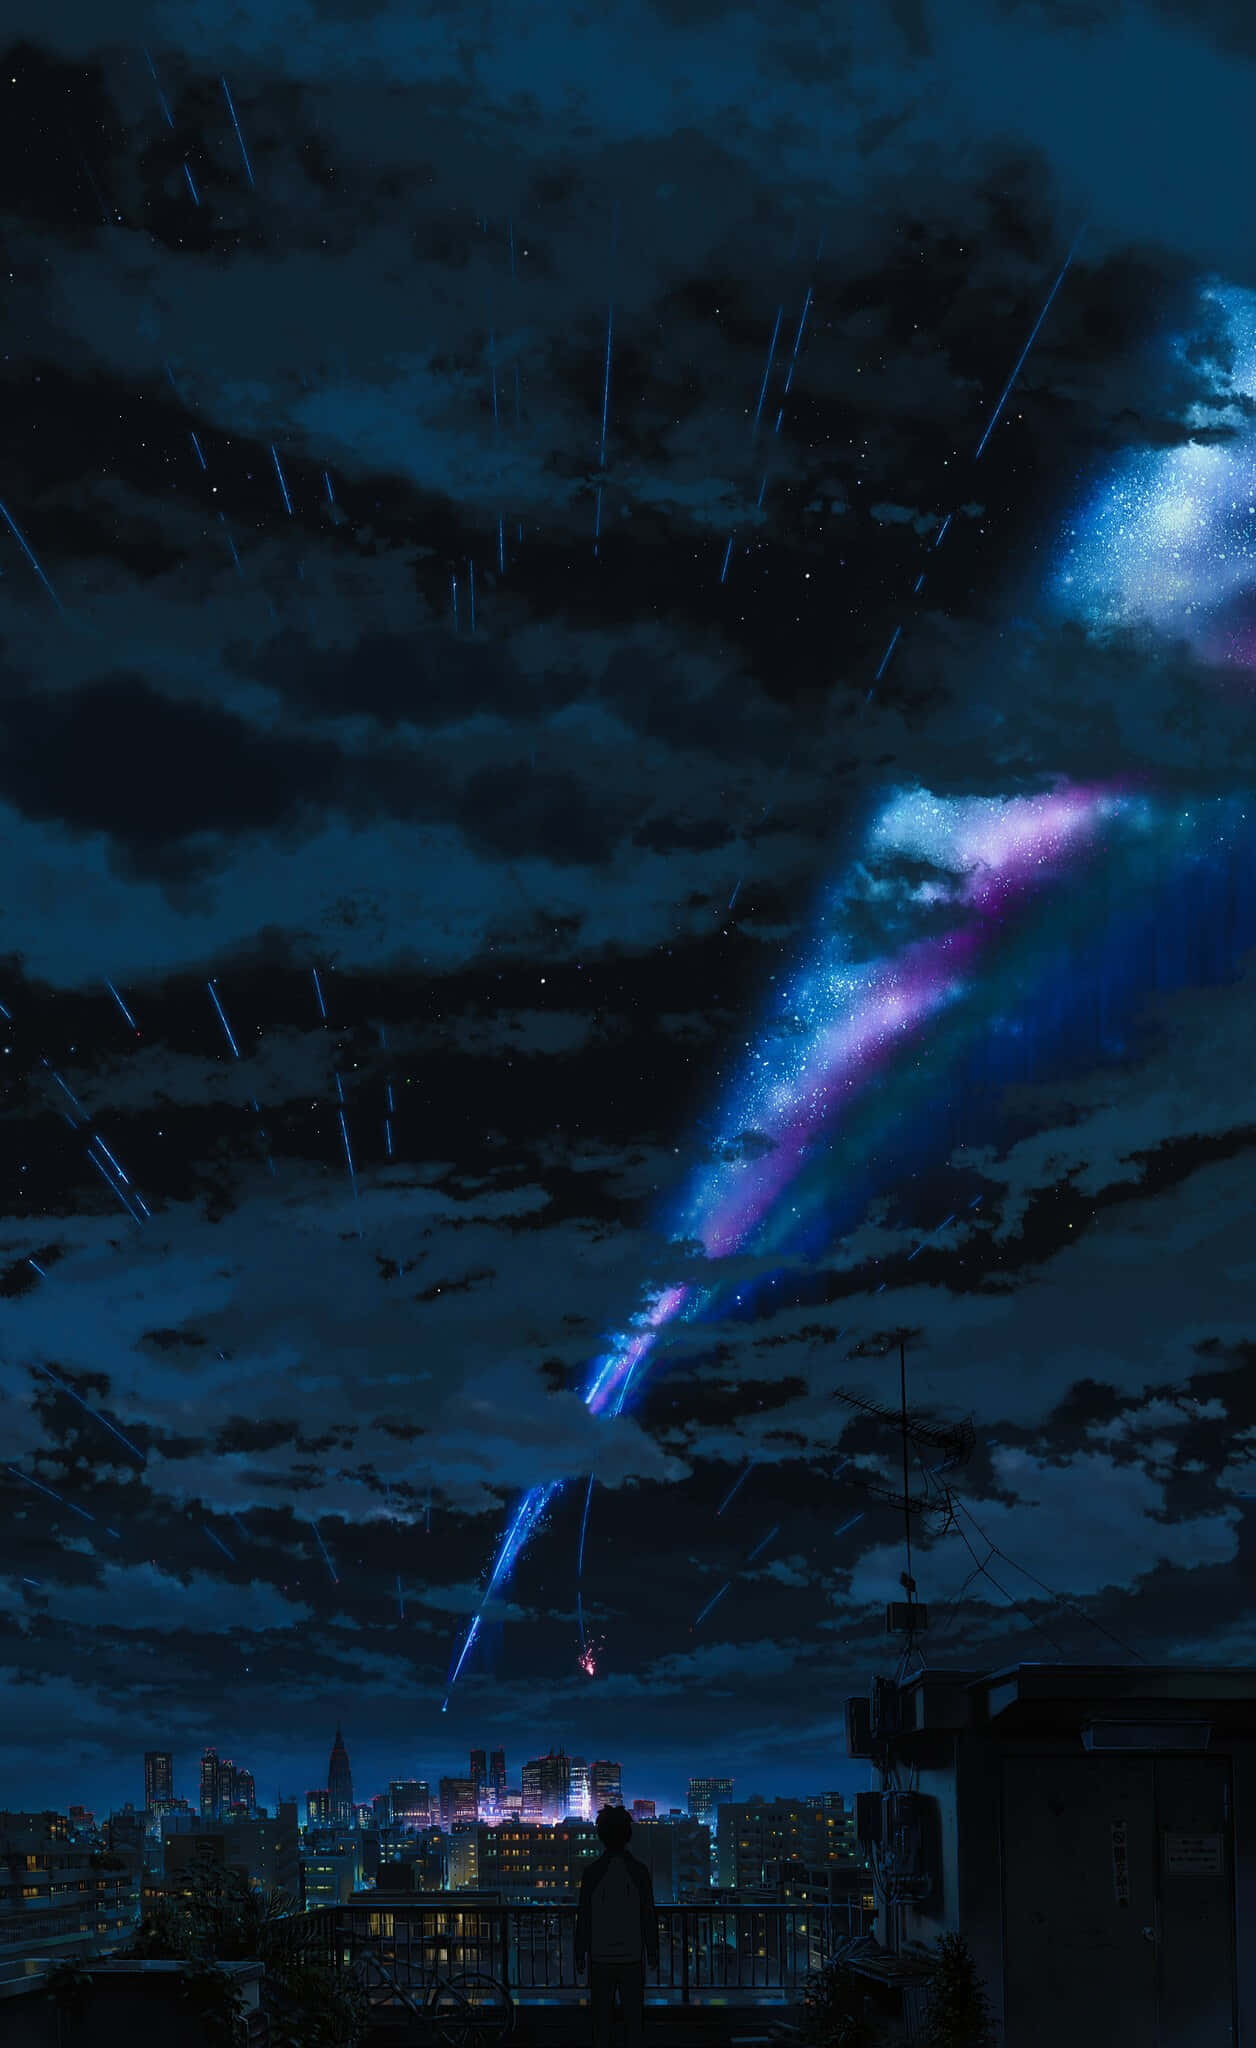 Unospettacolare Cielo Anime Pieno Di Nuvole E Stelle Splendide.